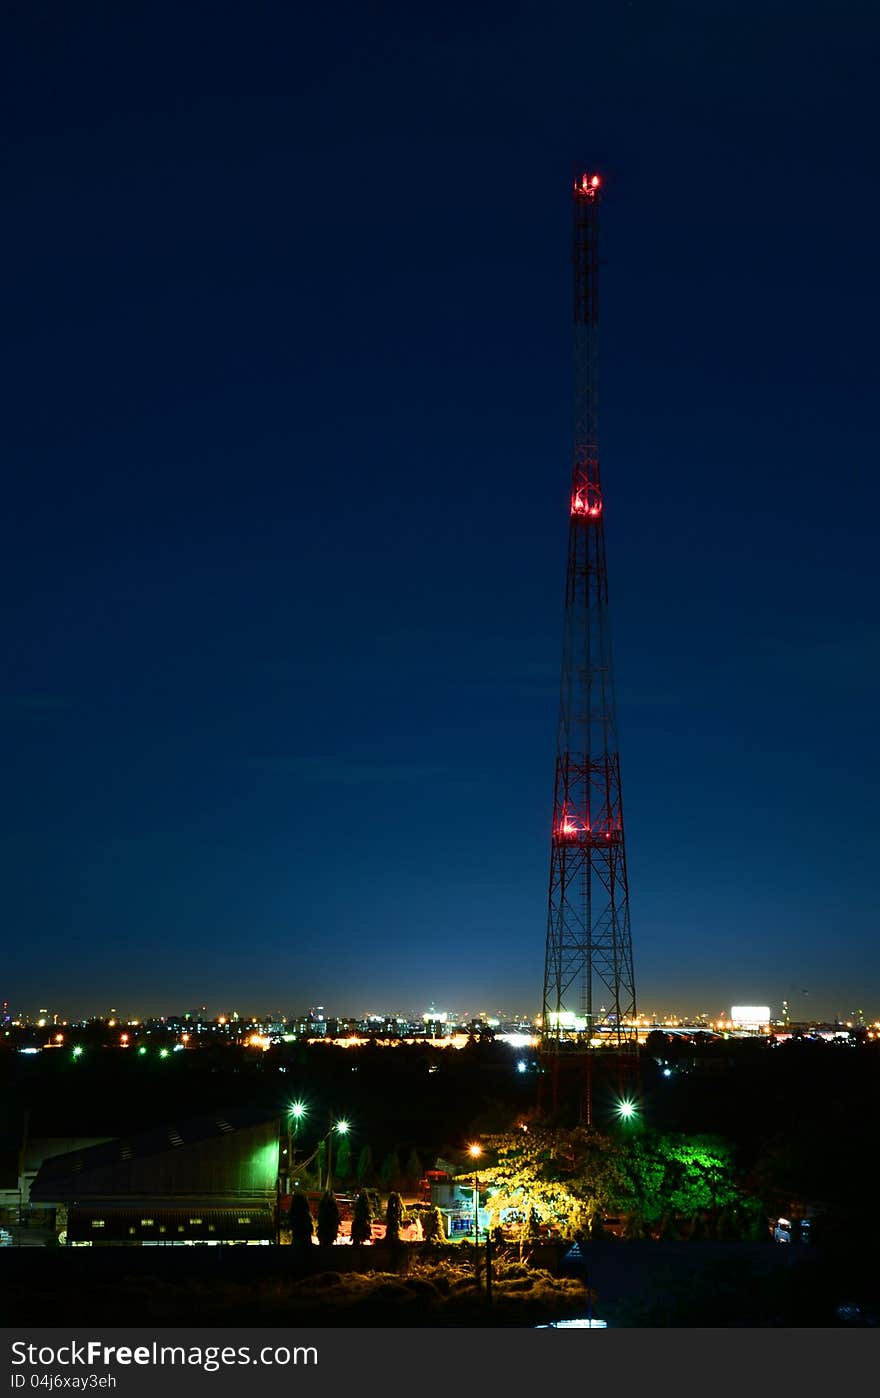 Telecom antennas at night sky